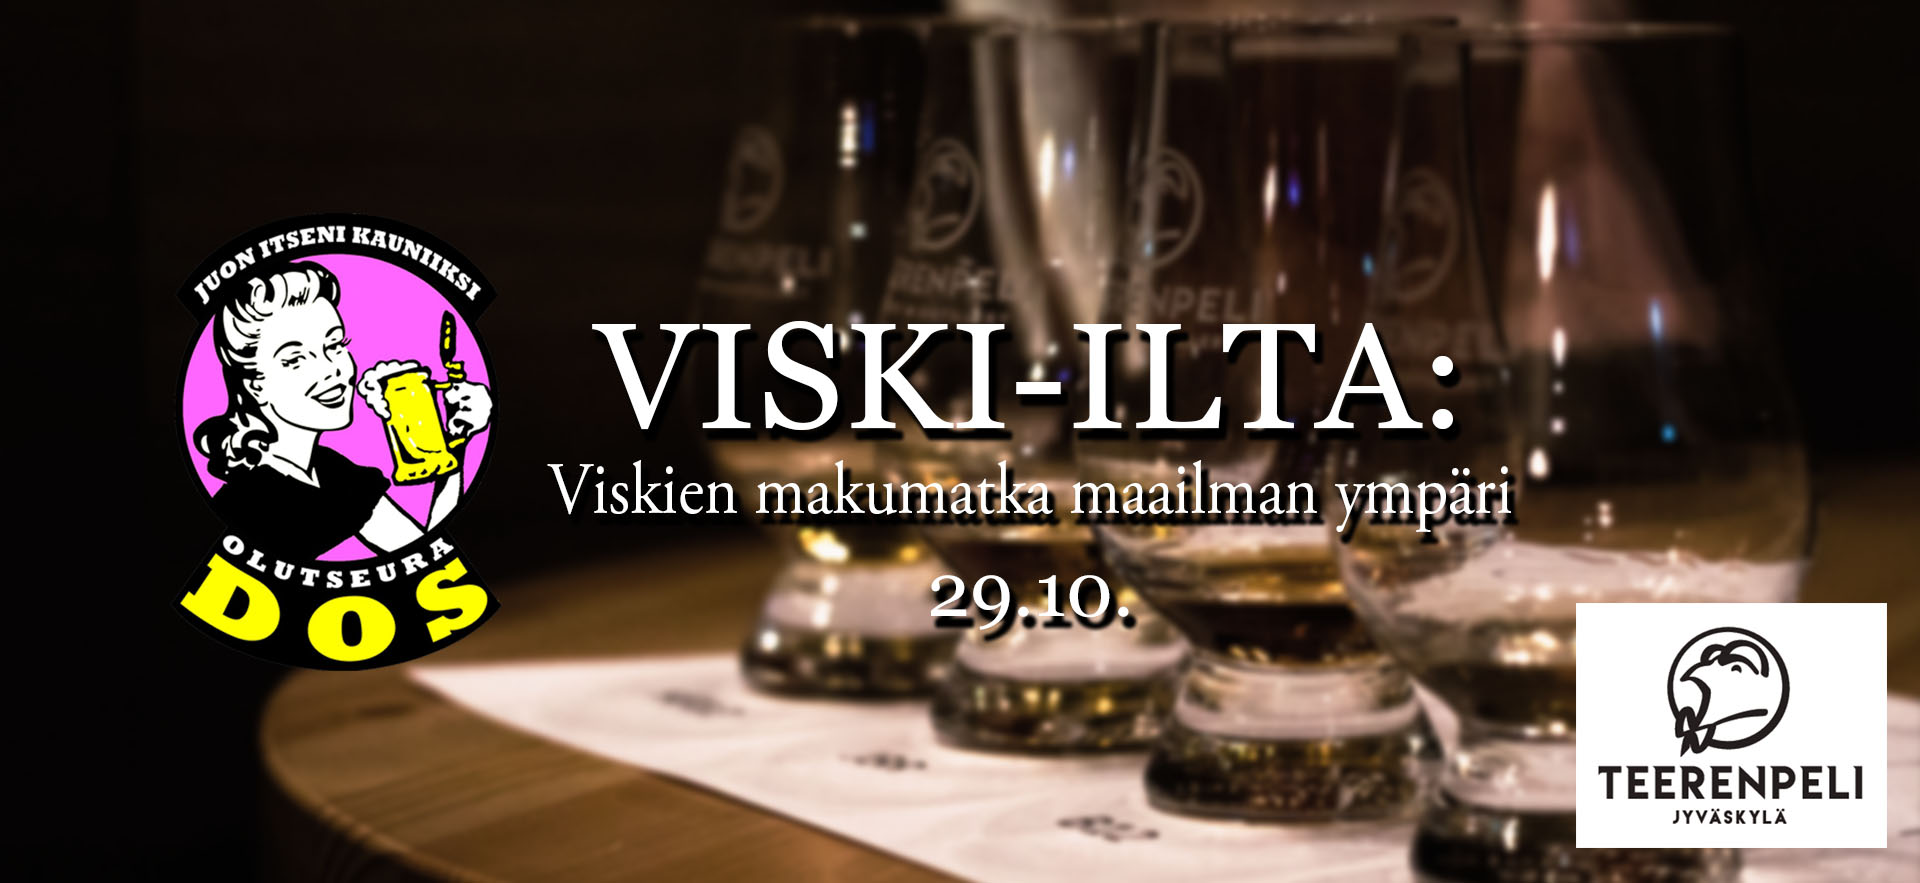 viski_sivut